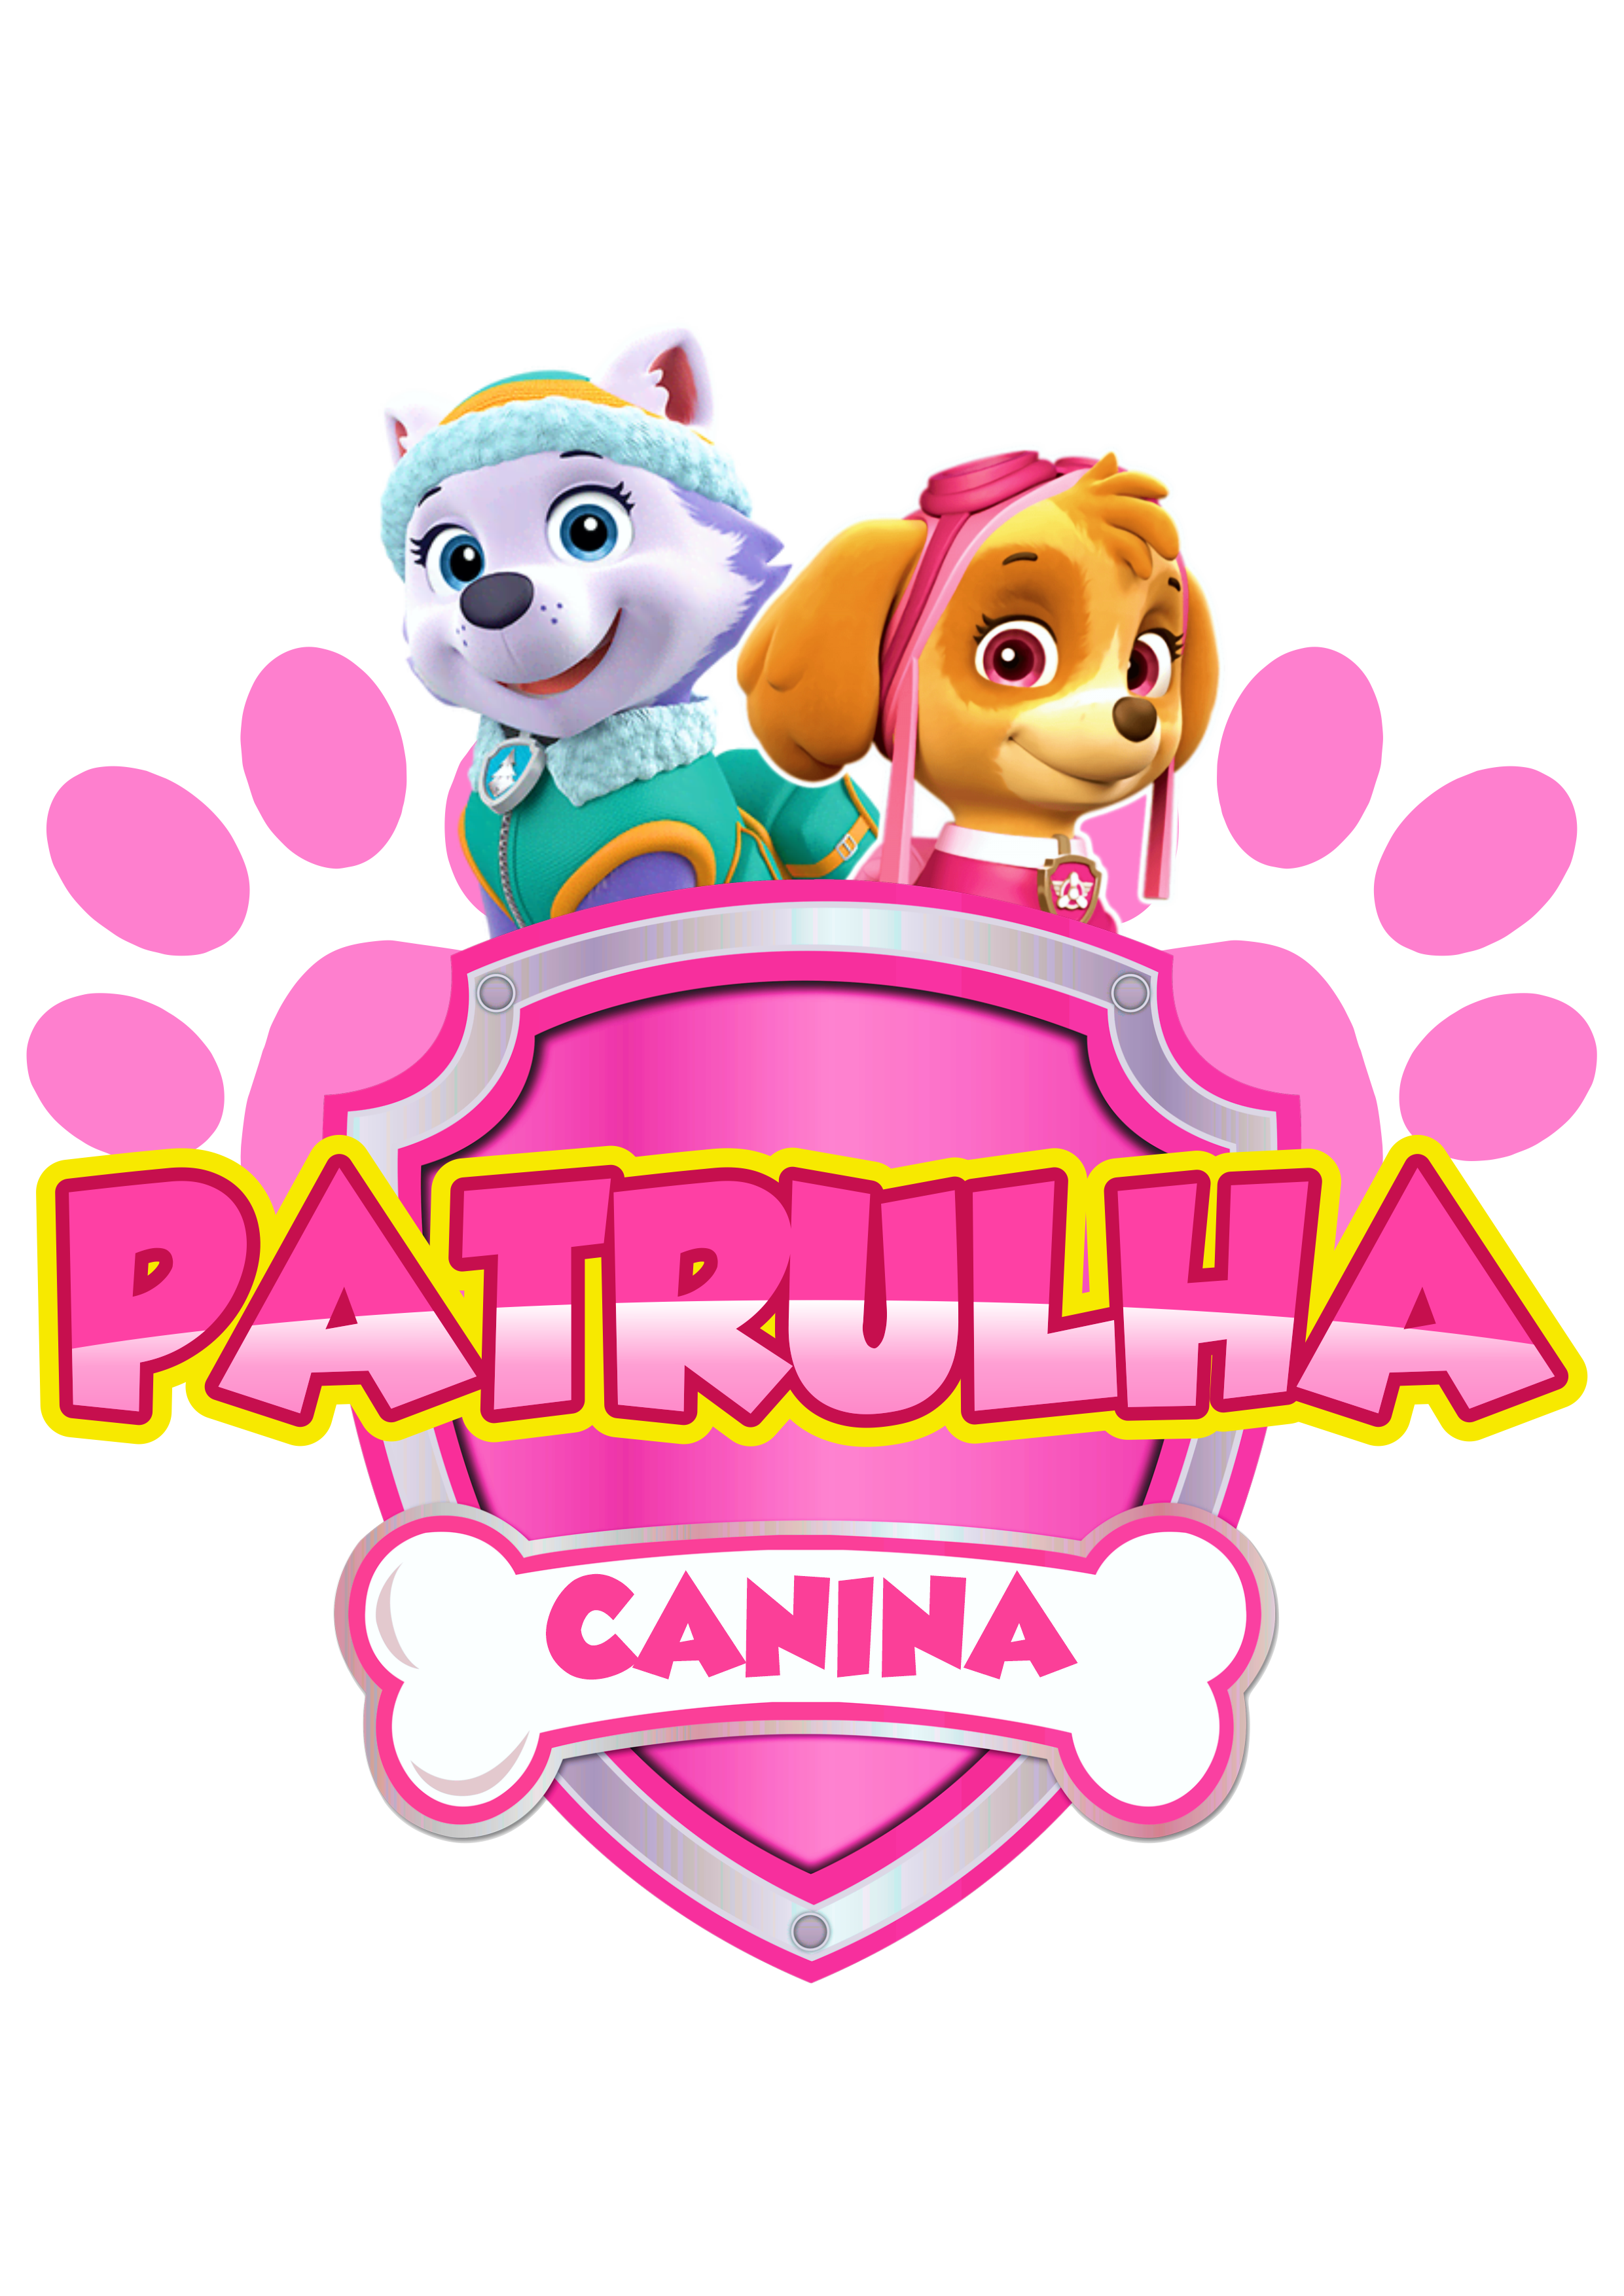 Patrulha canina rosa pink paw patrol desenho animado logomarca logo papelaria Skye e Everest pack de imagens png